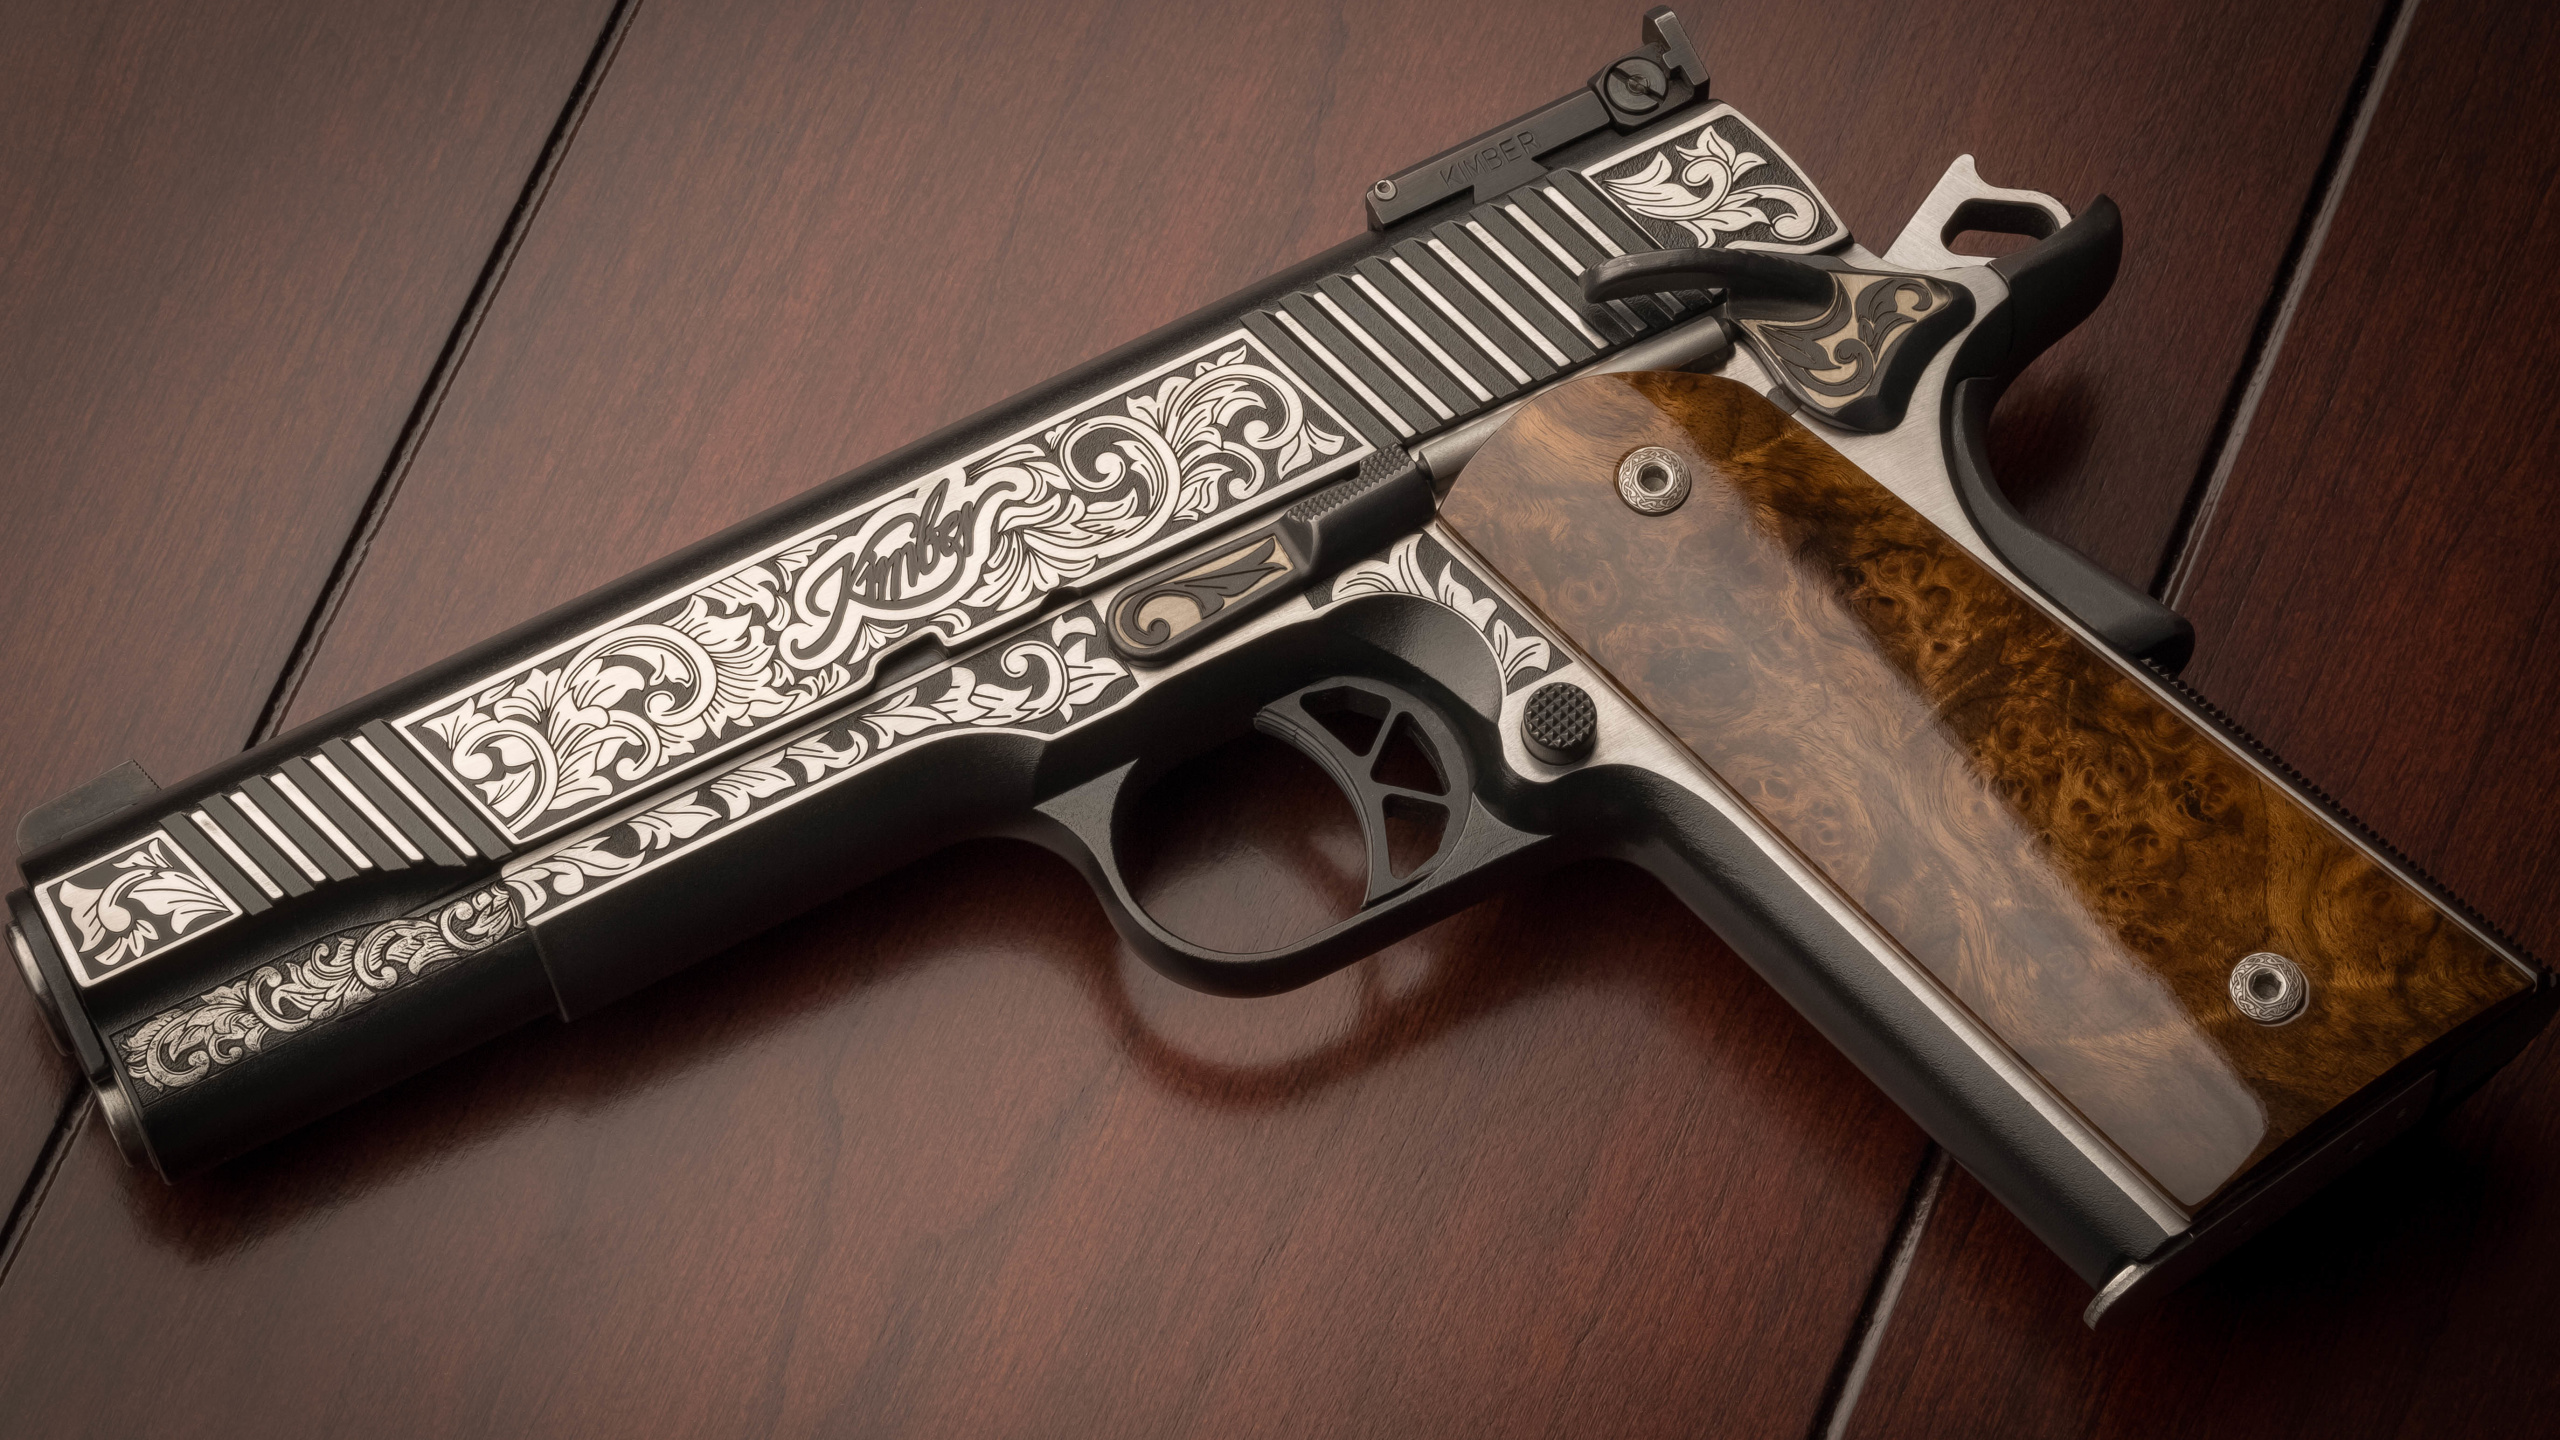 M1911 Pistole, Feuerwaffe, Trigger, Gun Barrel, Pistole Zubehör. Wallpaper in 2560x1440 Resolution